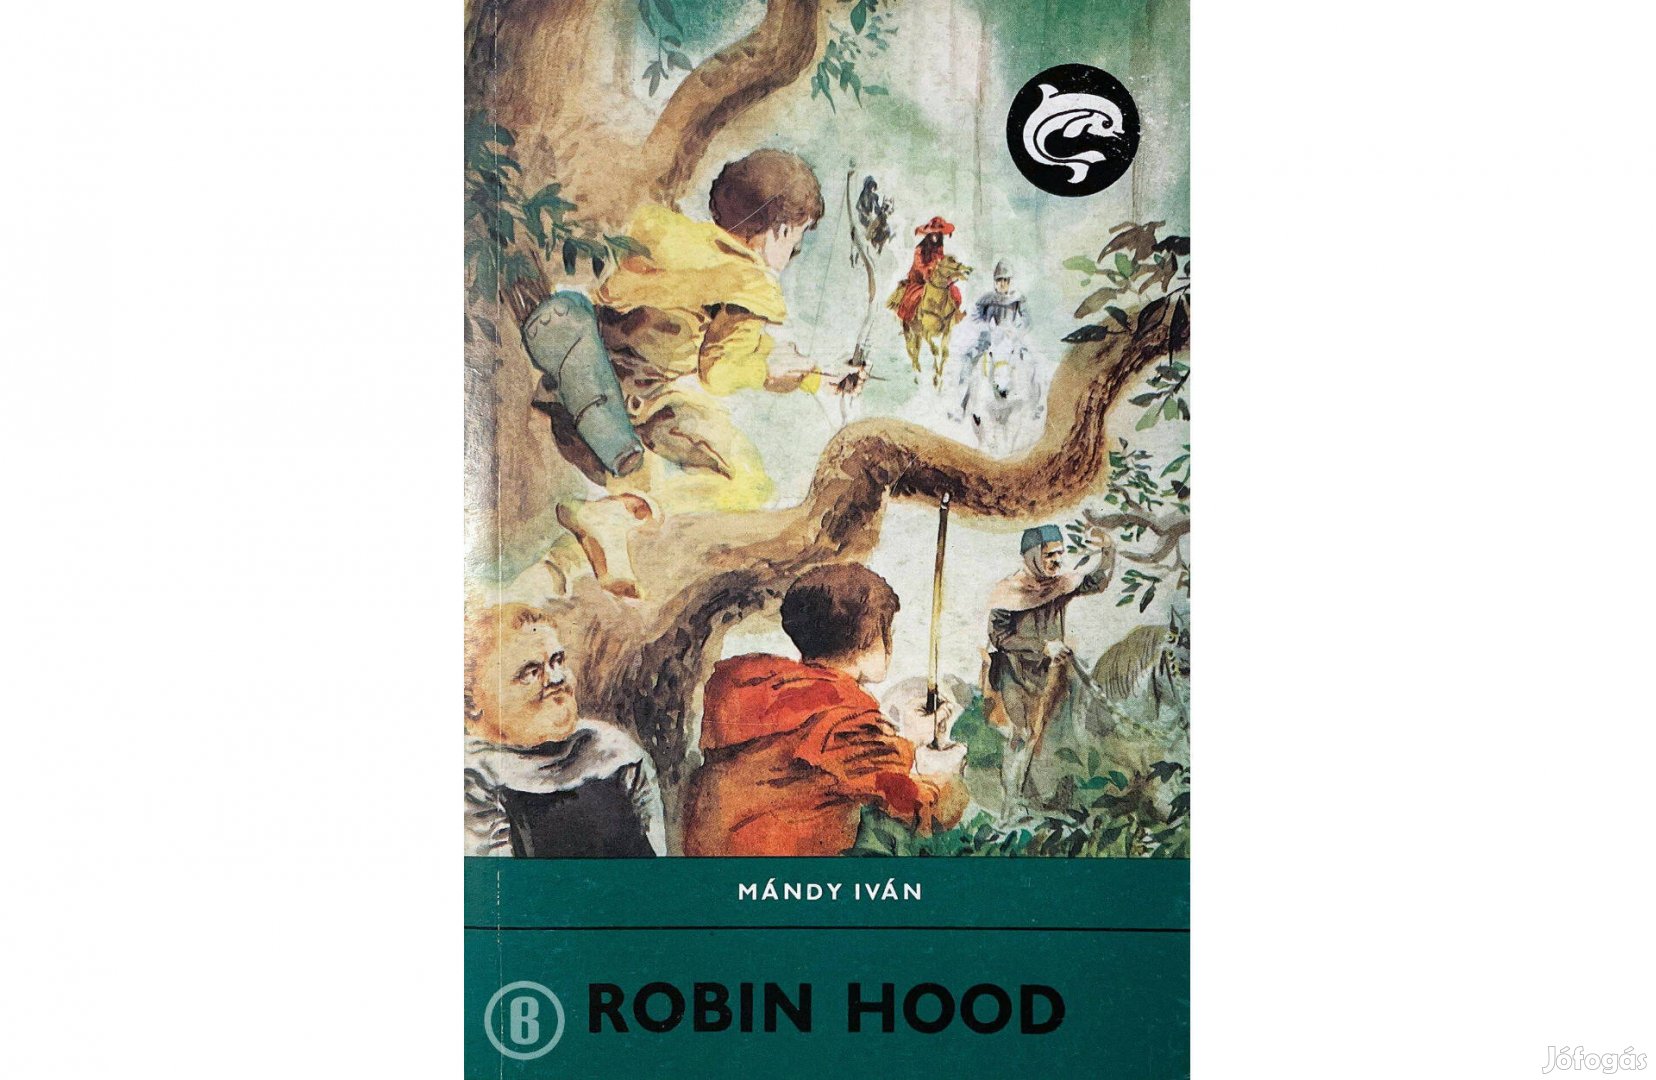 Mándy Iván: Robin Hood